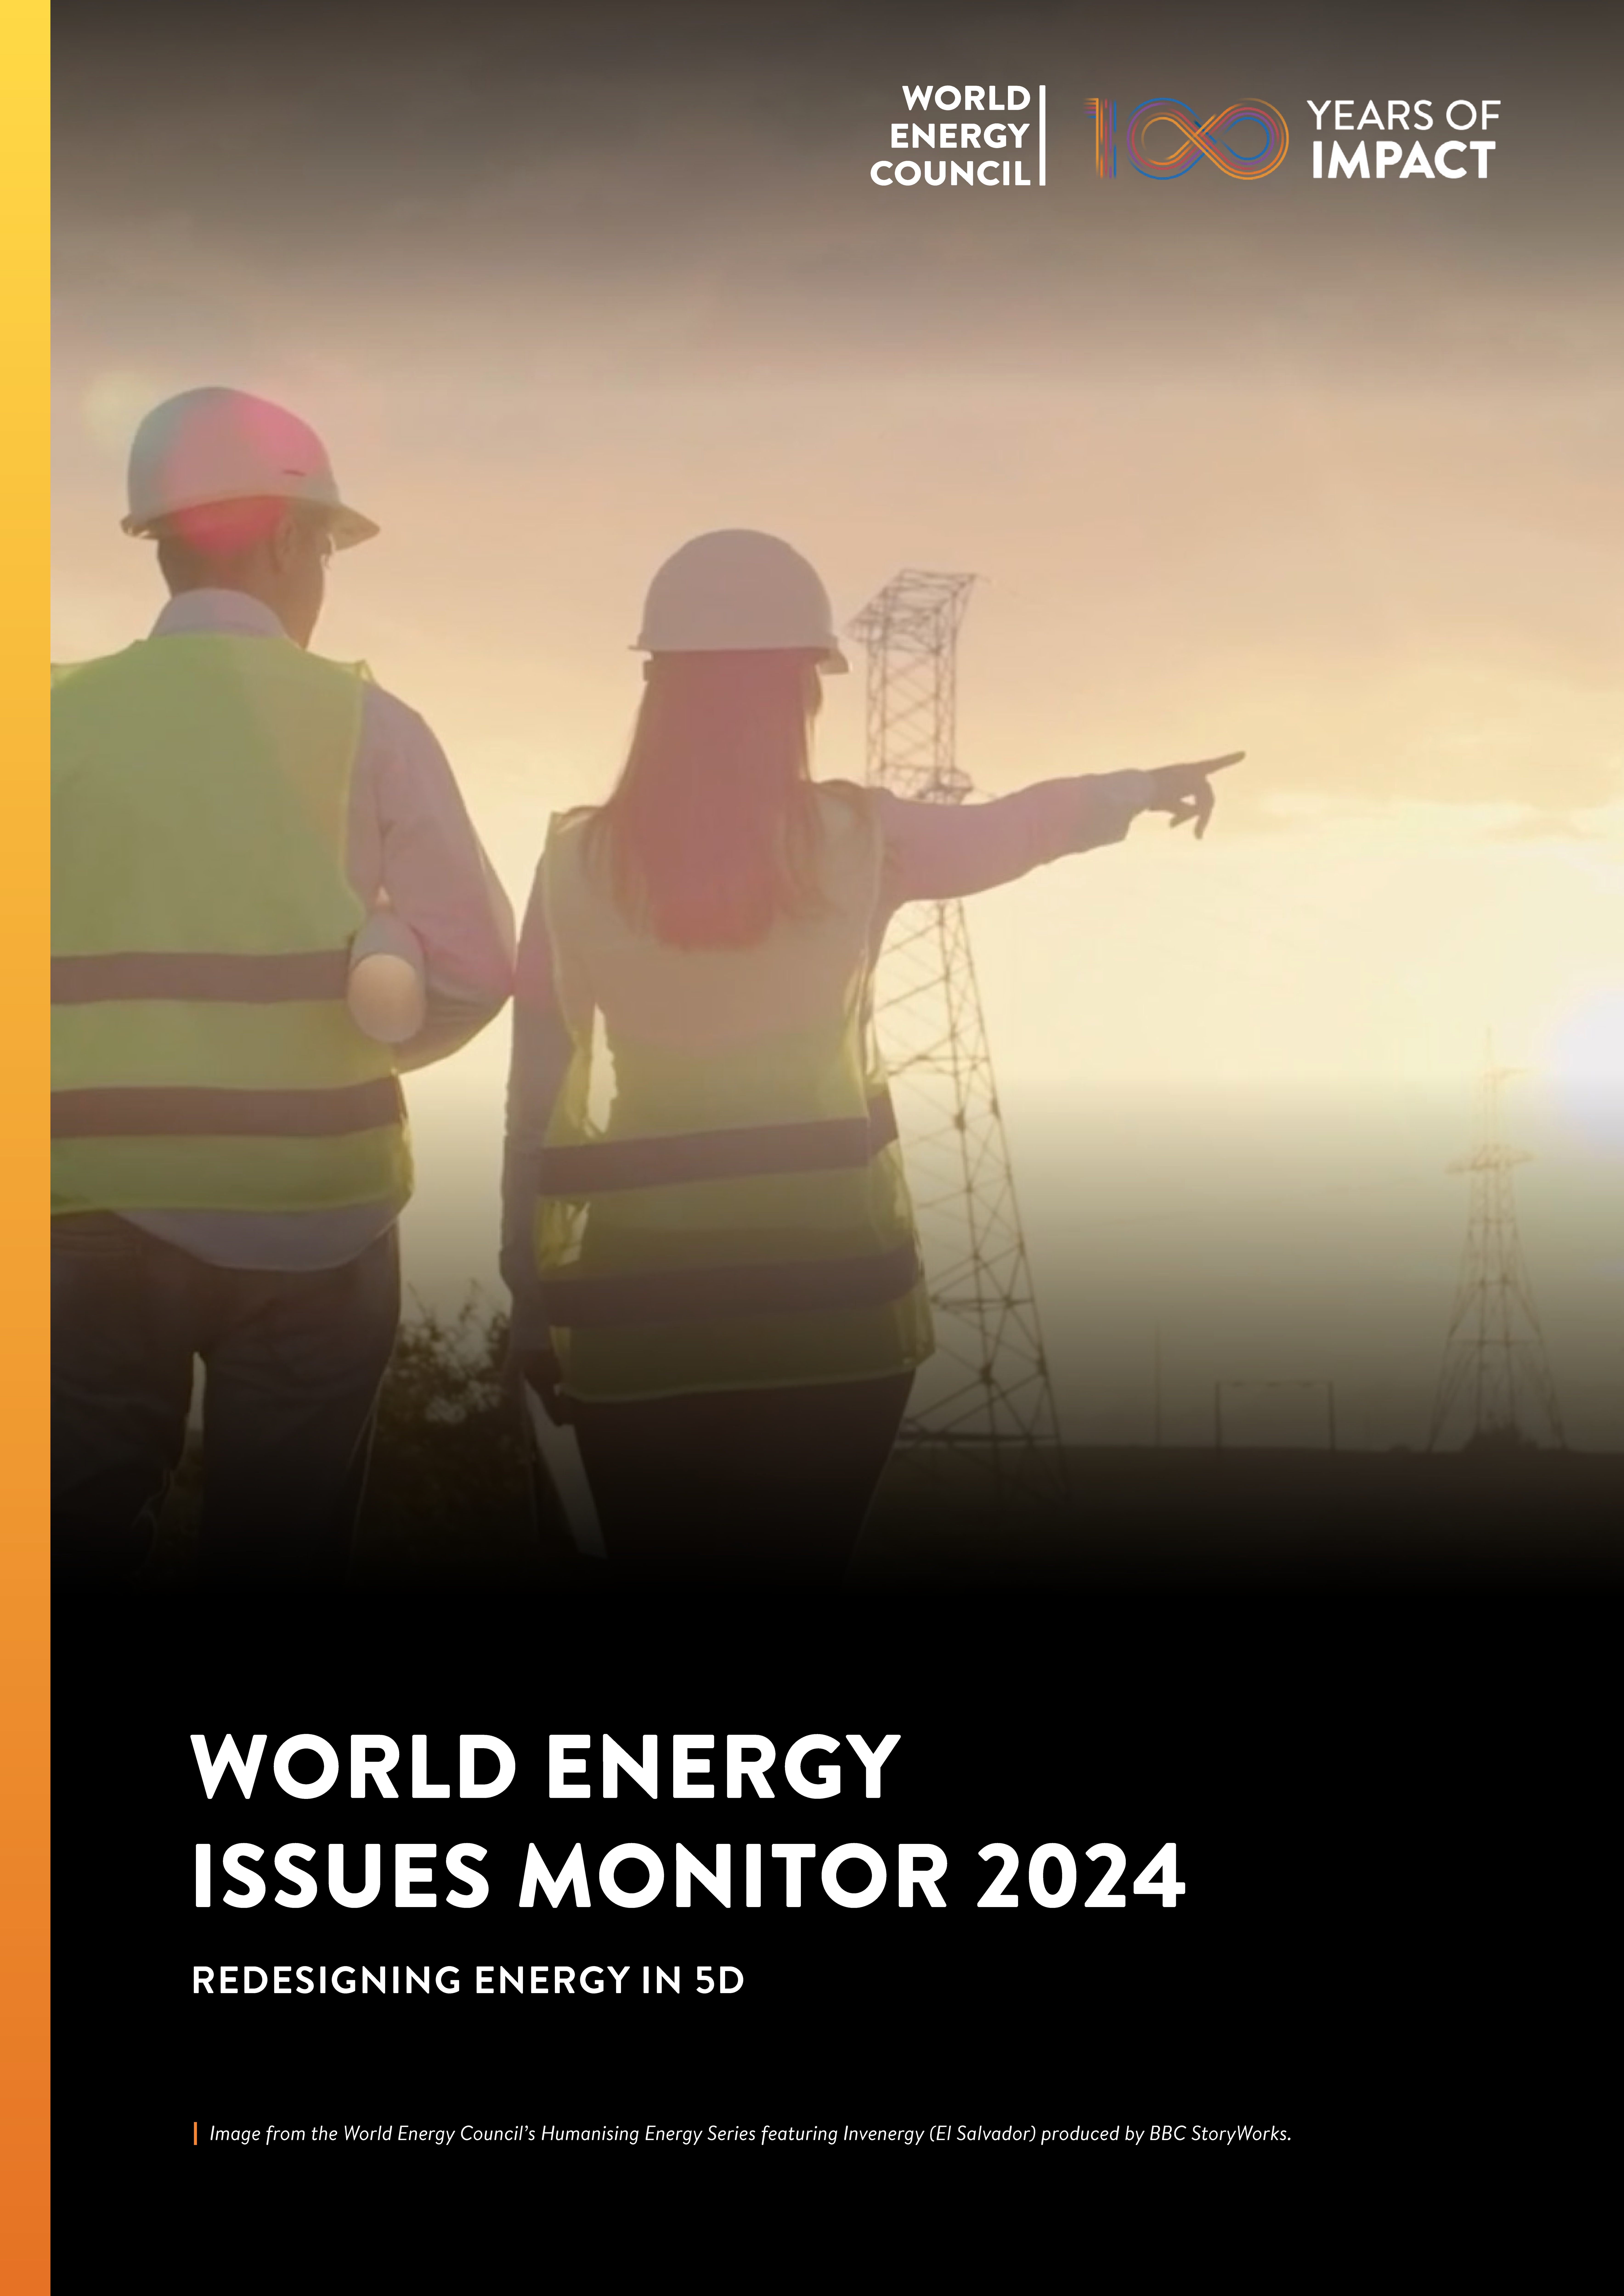 Lire la suite à propos de l’article World Energy Issues Monitor